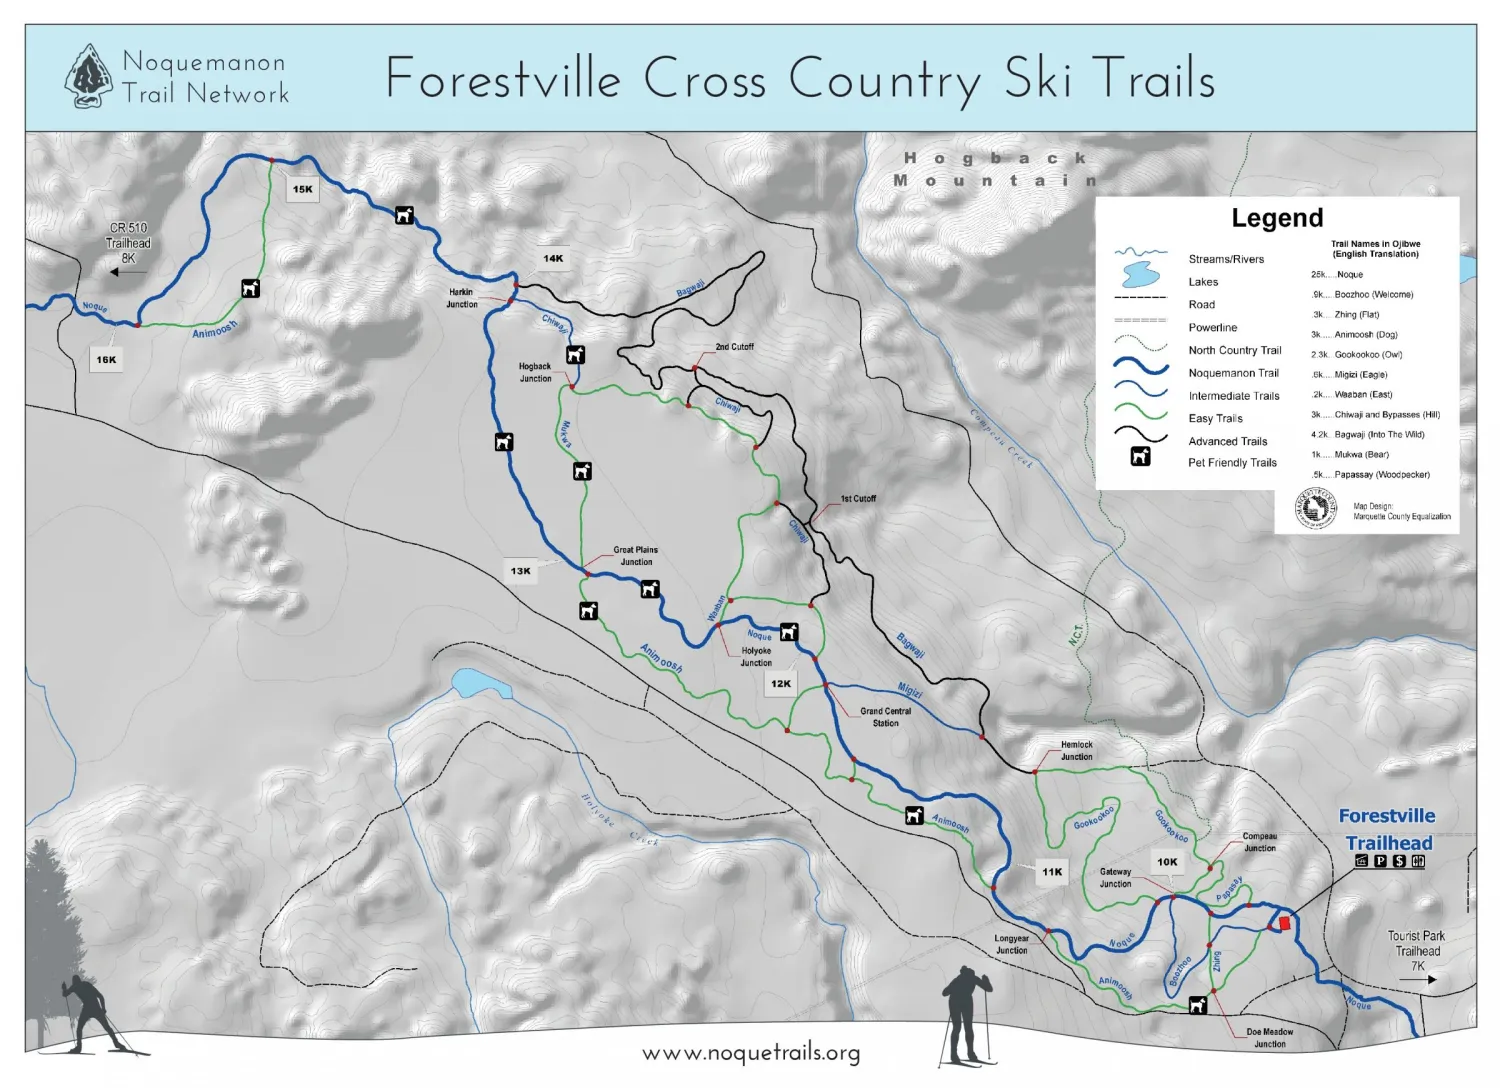 Forestville Cross Country Ski Trails